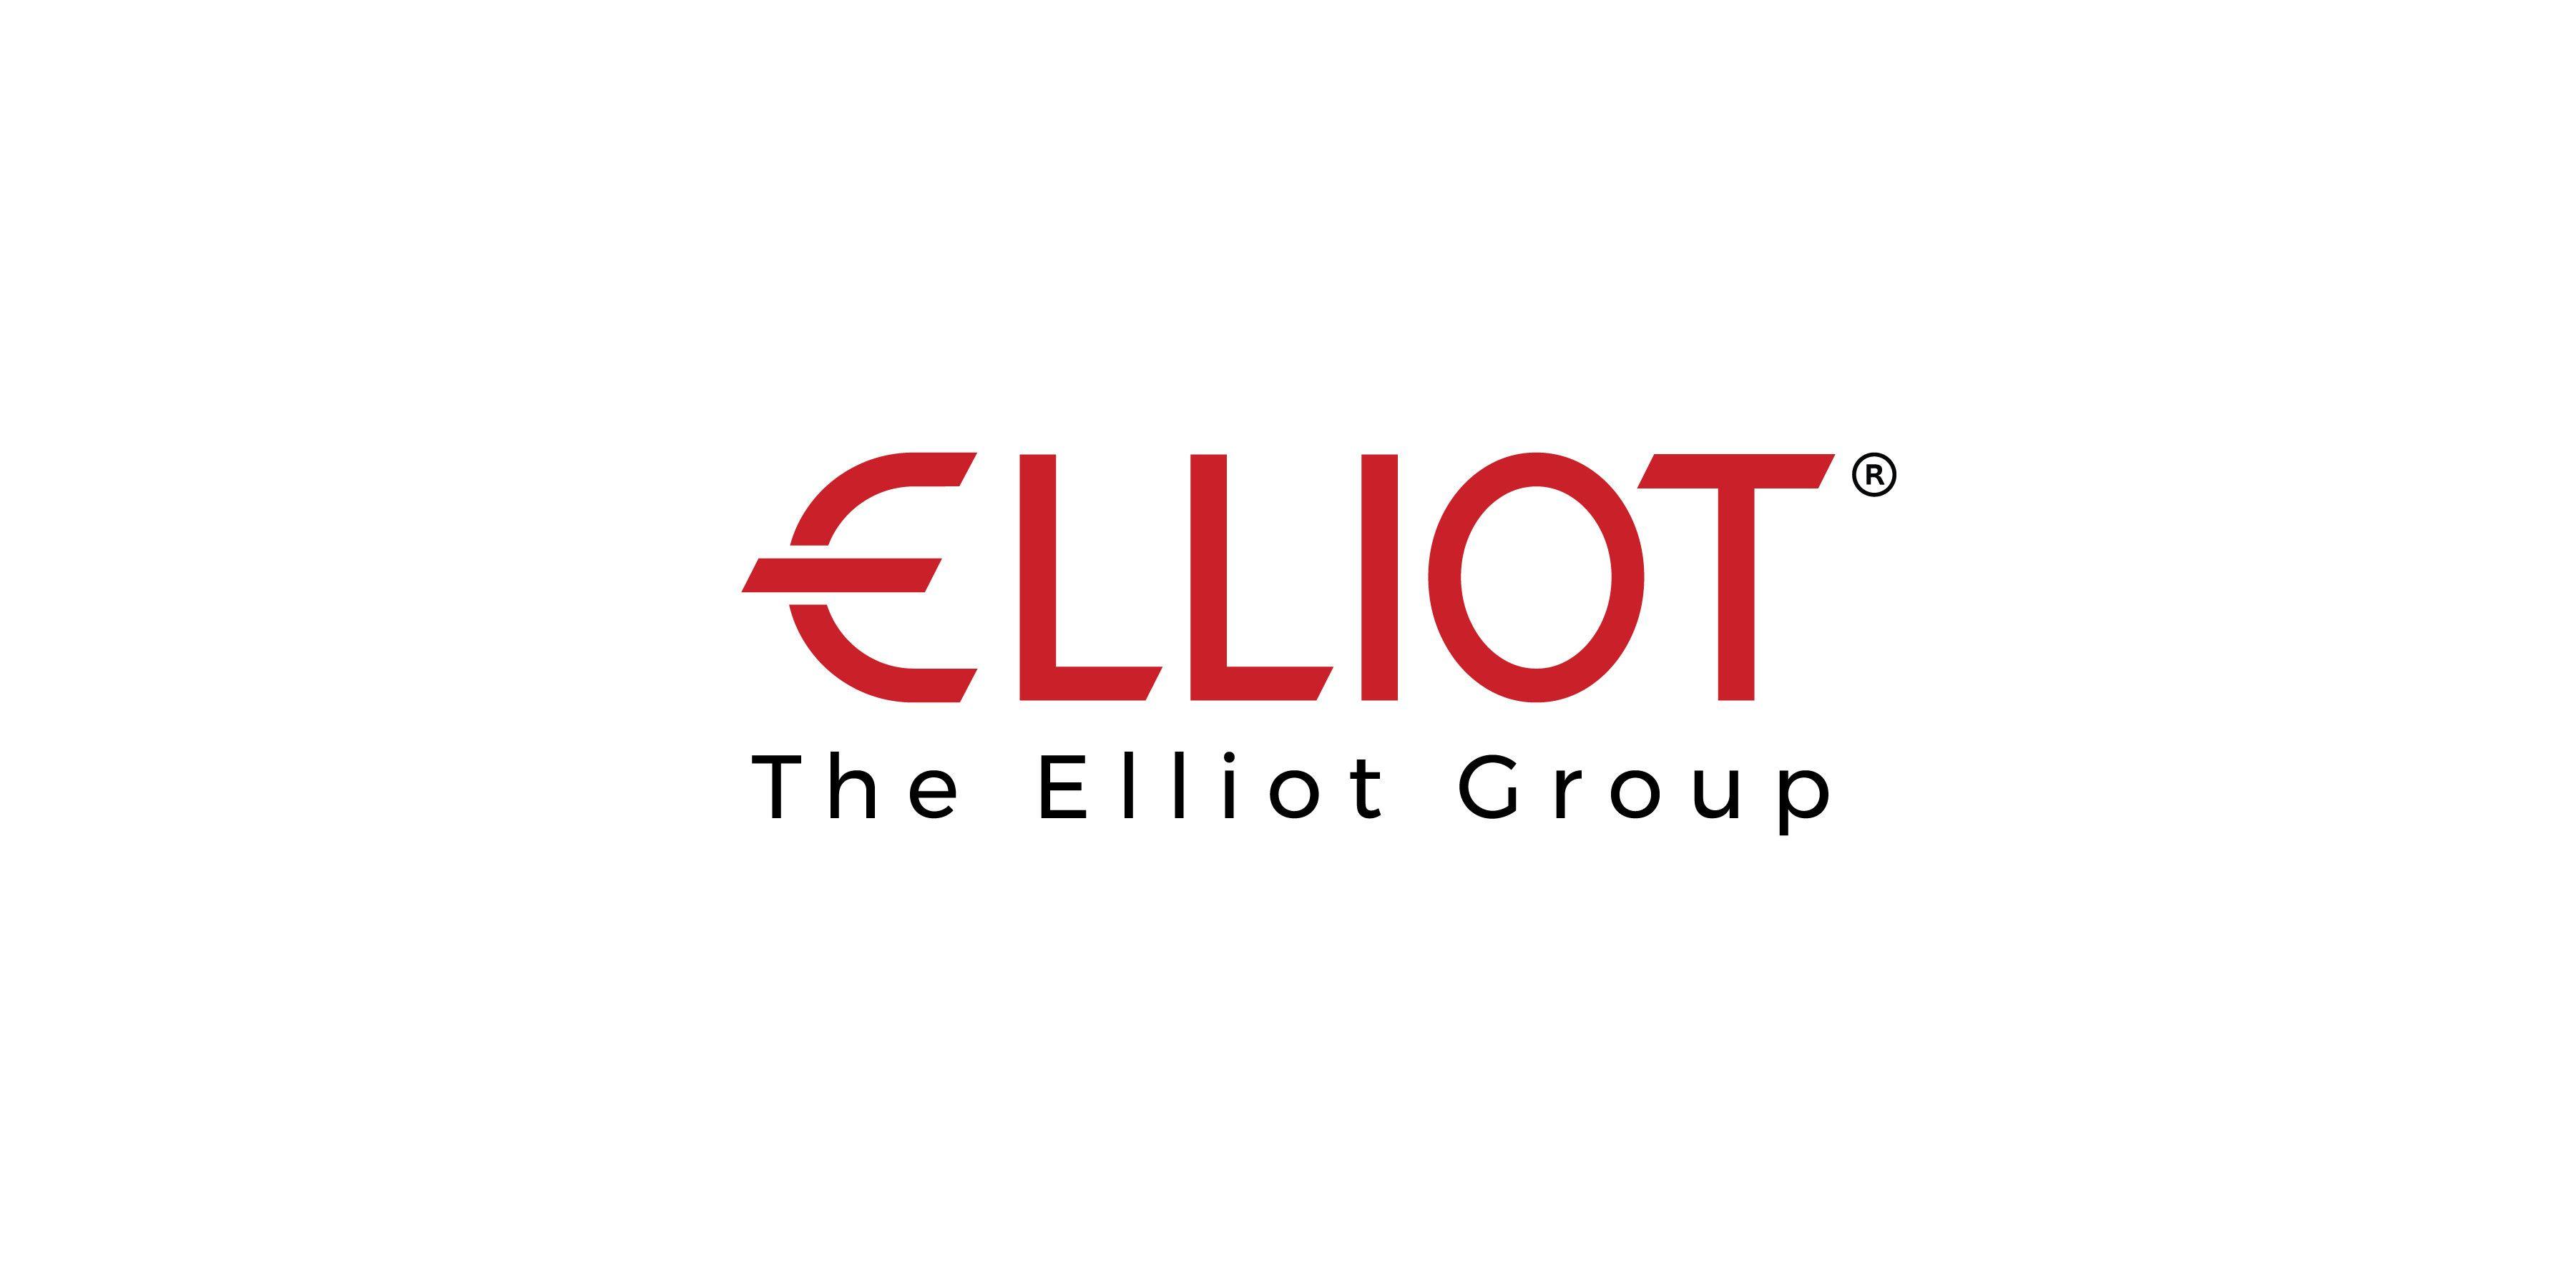 Elliot Logo - The Elliot Group | LinkedIn